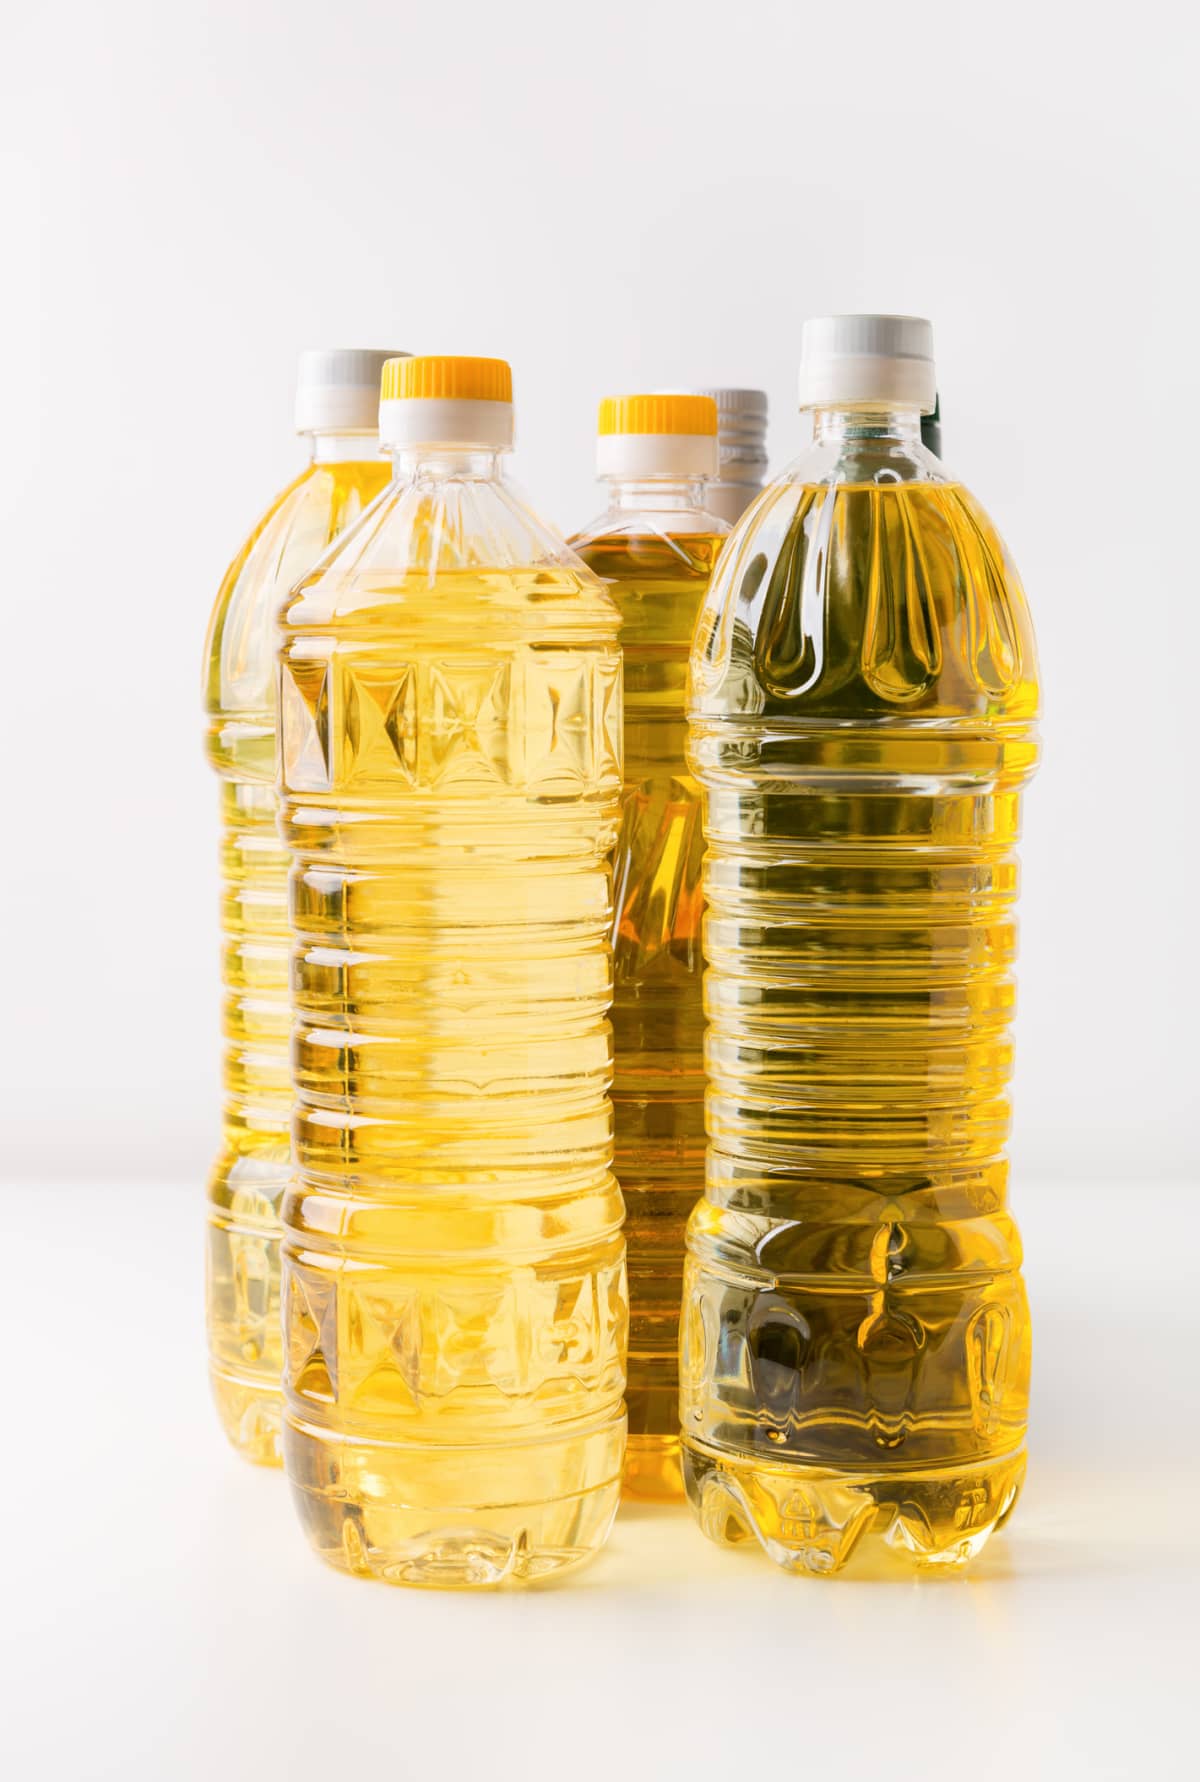 Sunflower oil bottles on white background